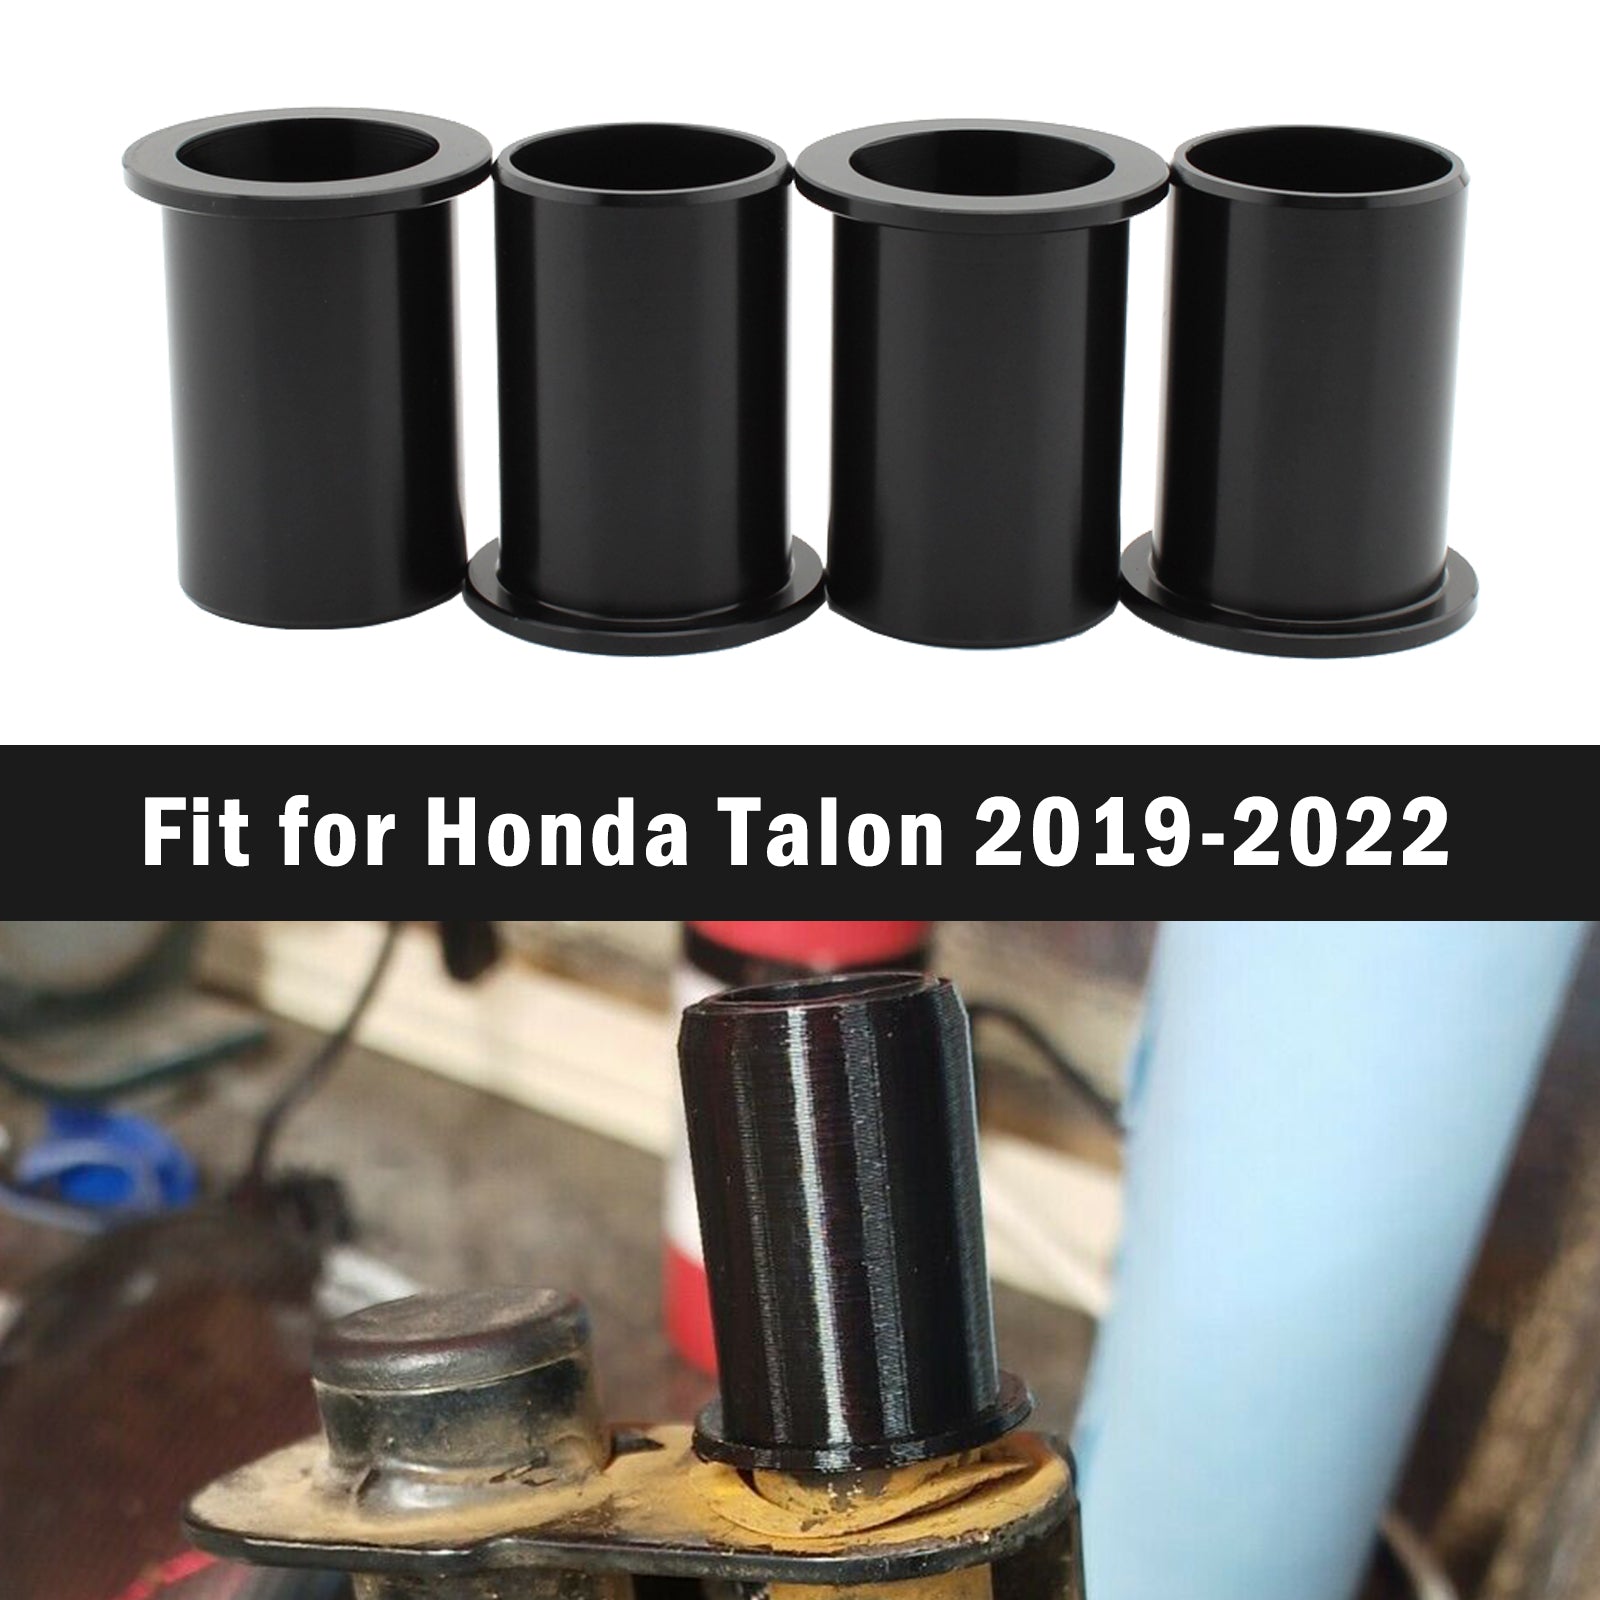 Kit di ricostruzione boccole porta aggiornato per correzione sonaglio porta per Honda Talon 2019-2022